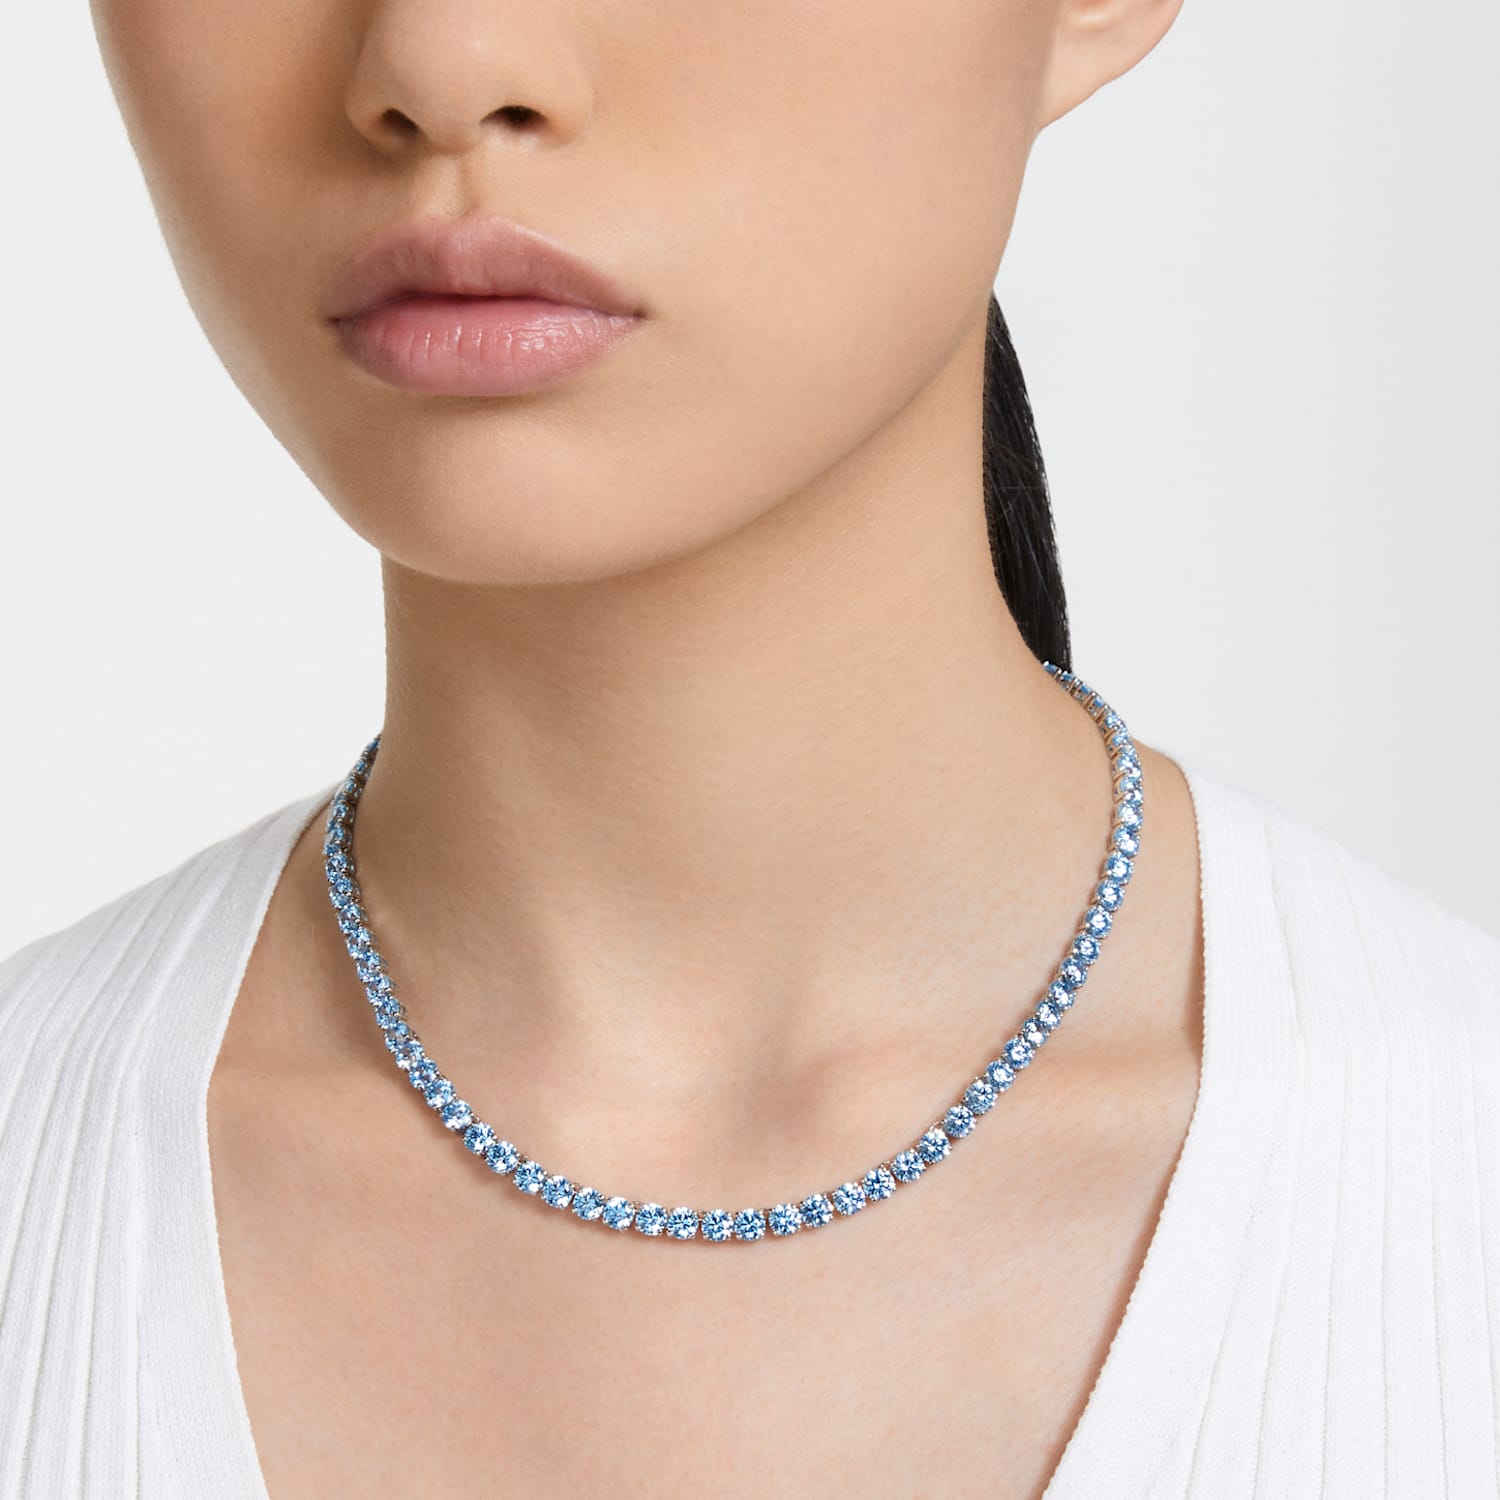 bevind zich verraad genie Matrix Tennis necklace, Round cut, Medium, Blue, Rhodium plated | Swarovski